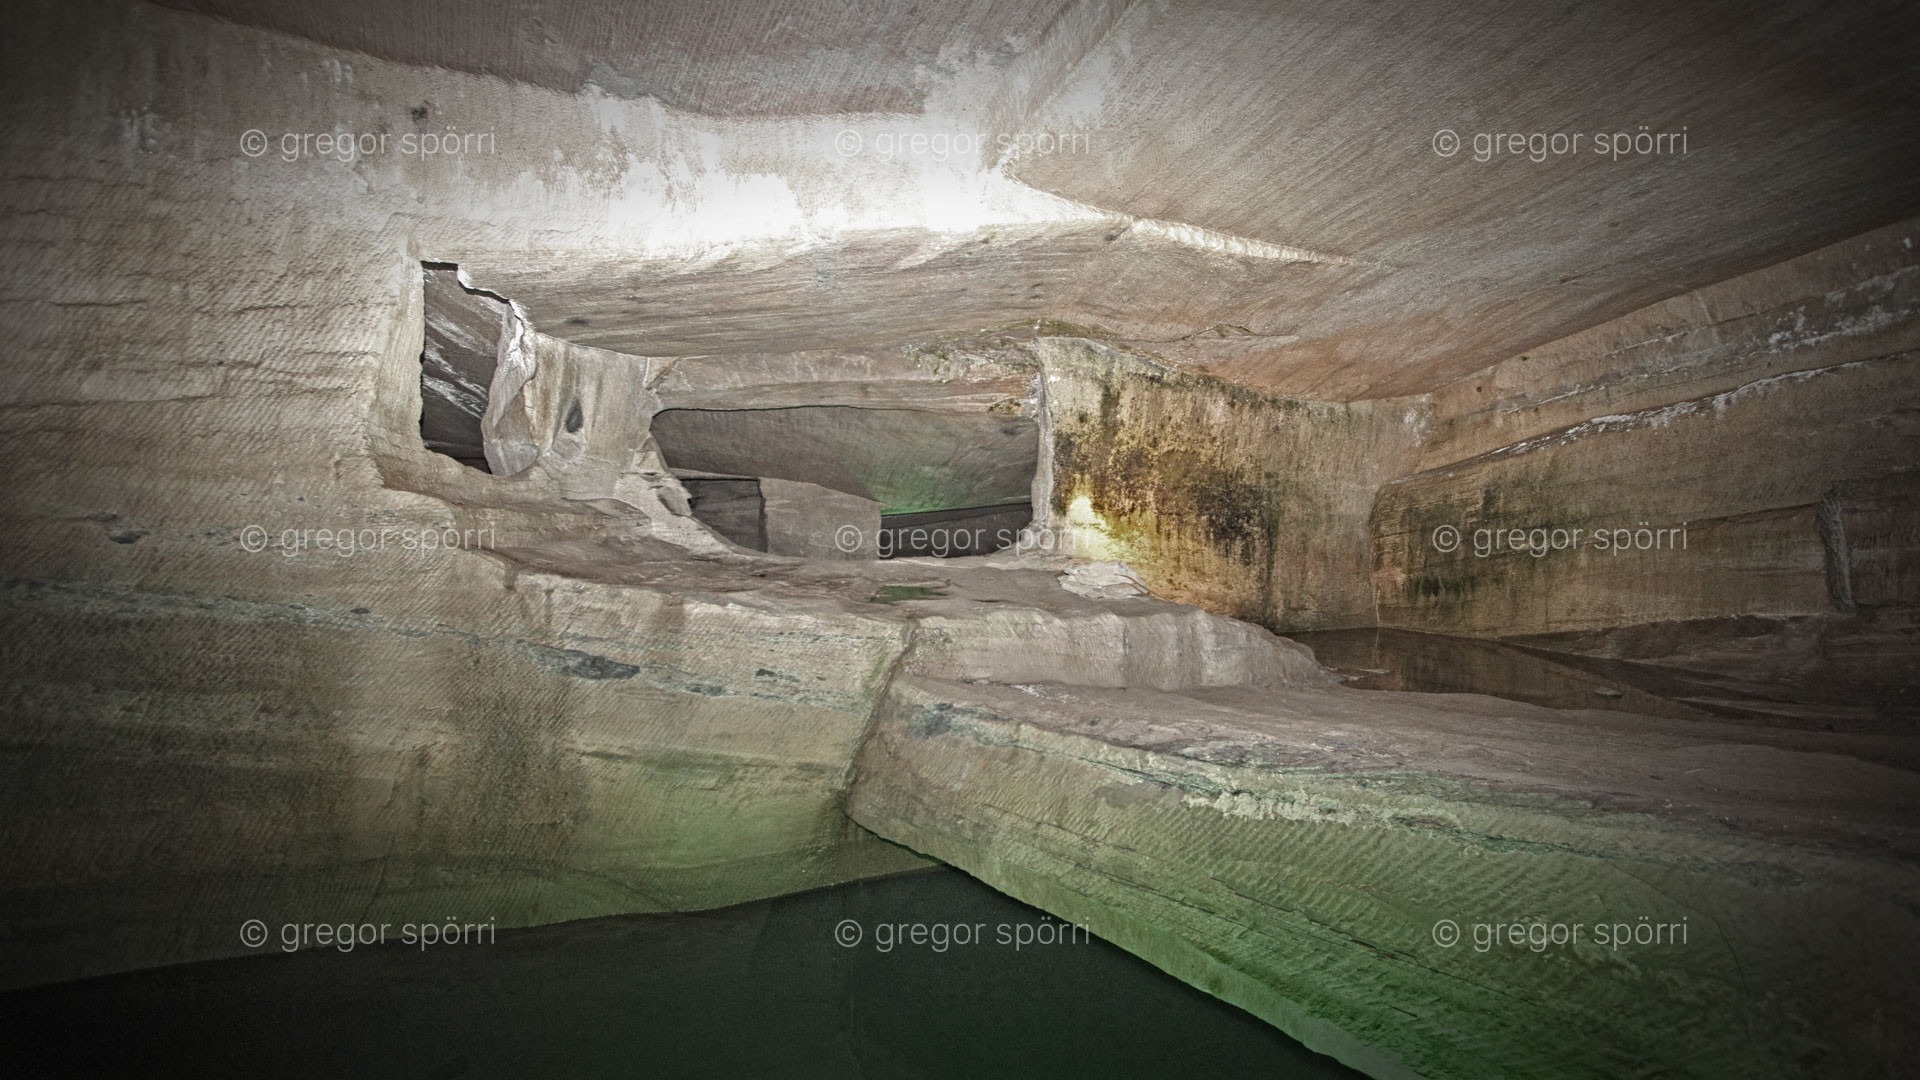 Die China-Grotte Nr. 35 von Huang Shan (Blumenberg): Bizarre Unterwelt. Bild 04: Eine aus dem Stein geschlagene Brücke überspannt den Abgrund zur 2. Ebene.